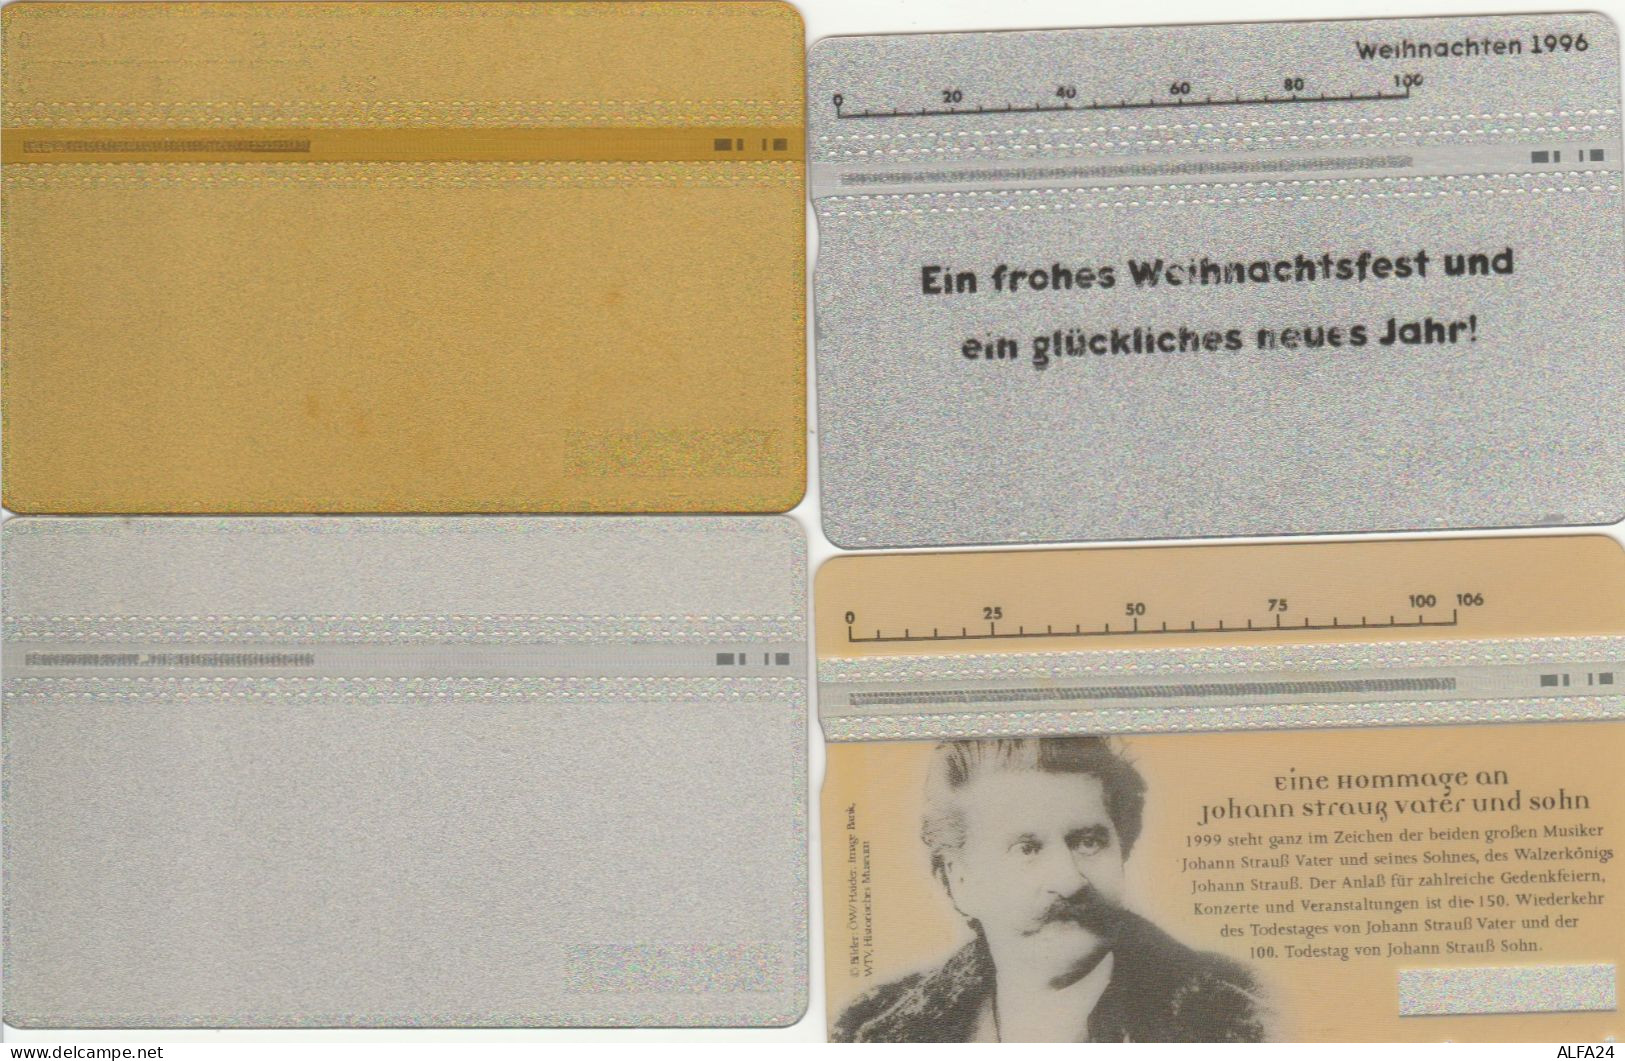 PHONE CARD 4 AUSTRIA (CK660 - Oesterreich